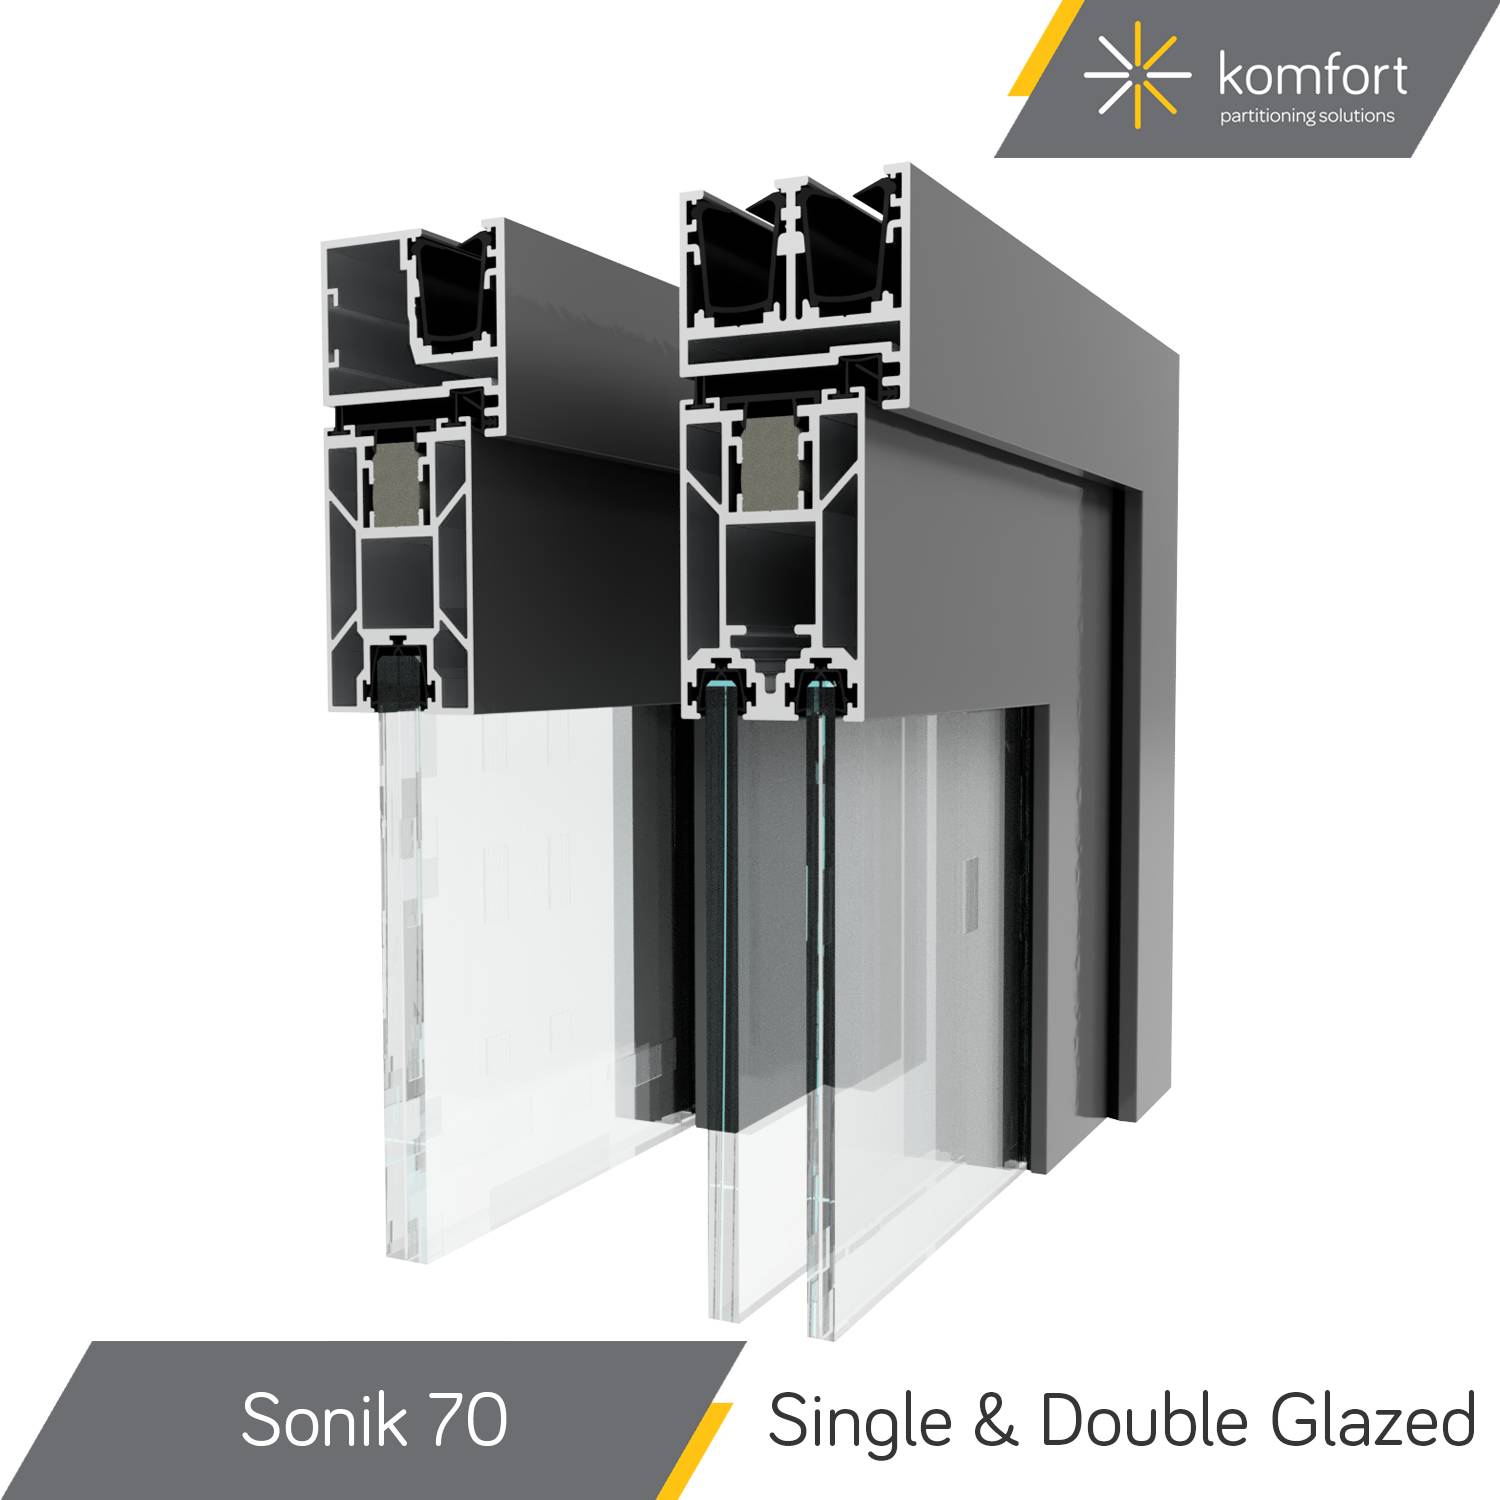 Komfort | Sonik 70 | Single & Double Glazed 44 mm Aluminium Doorsets